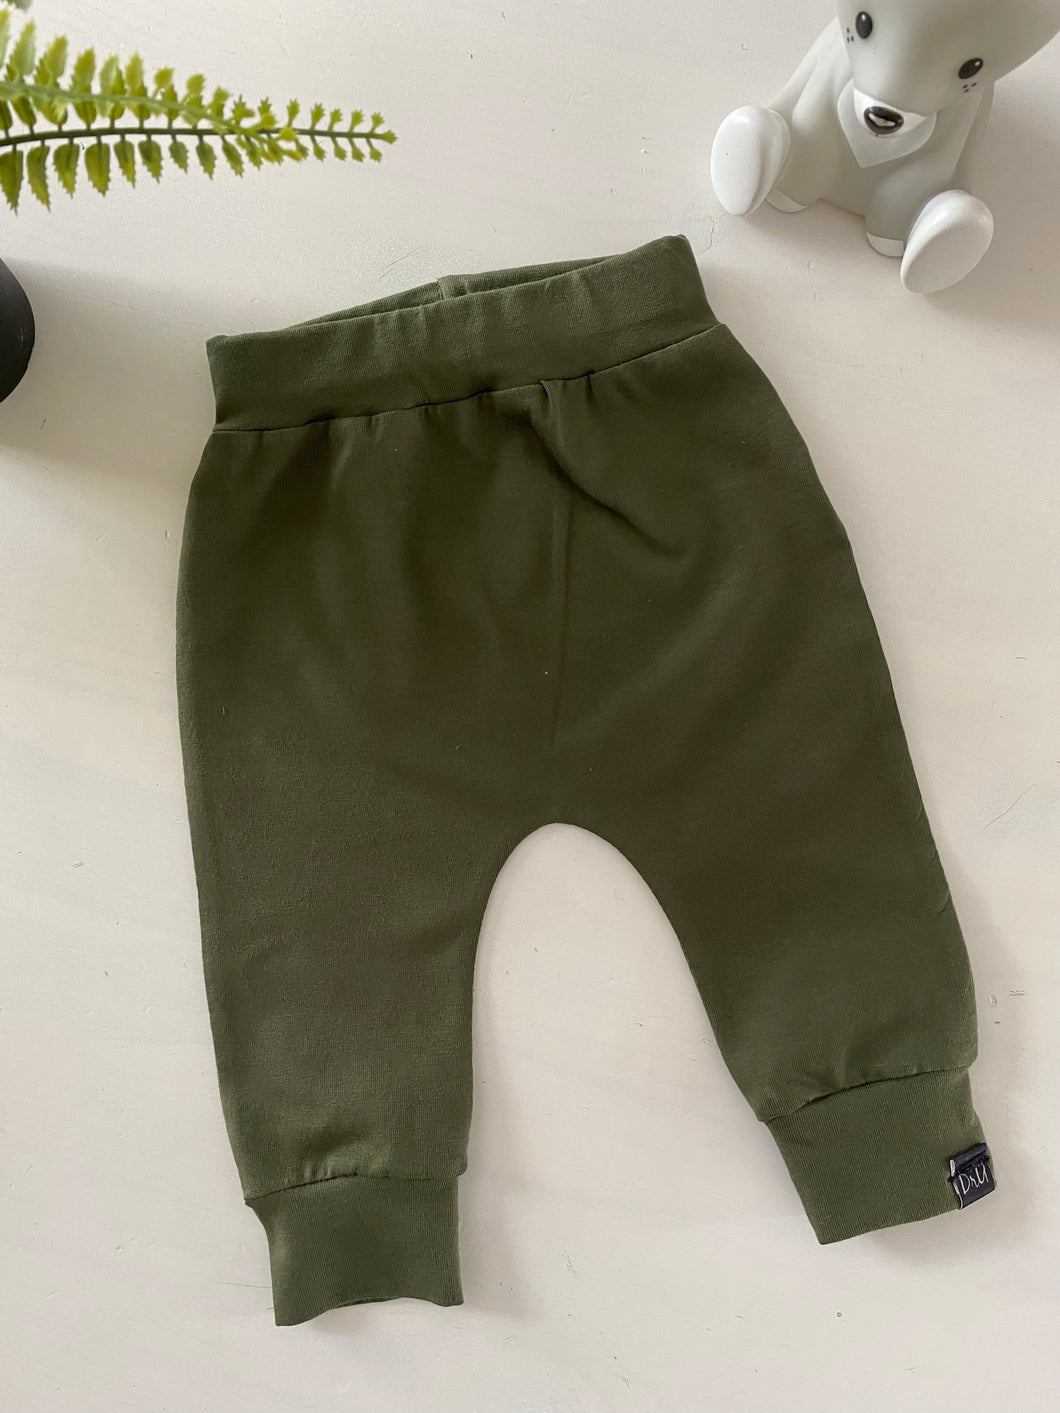 Newborn pants Olive green